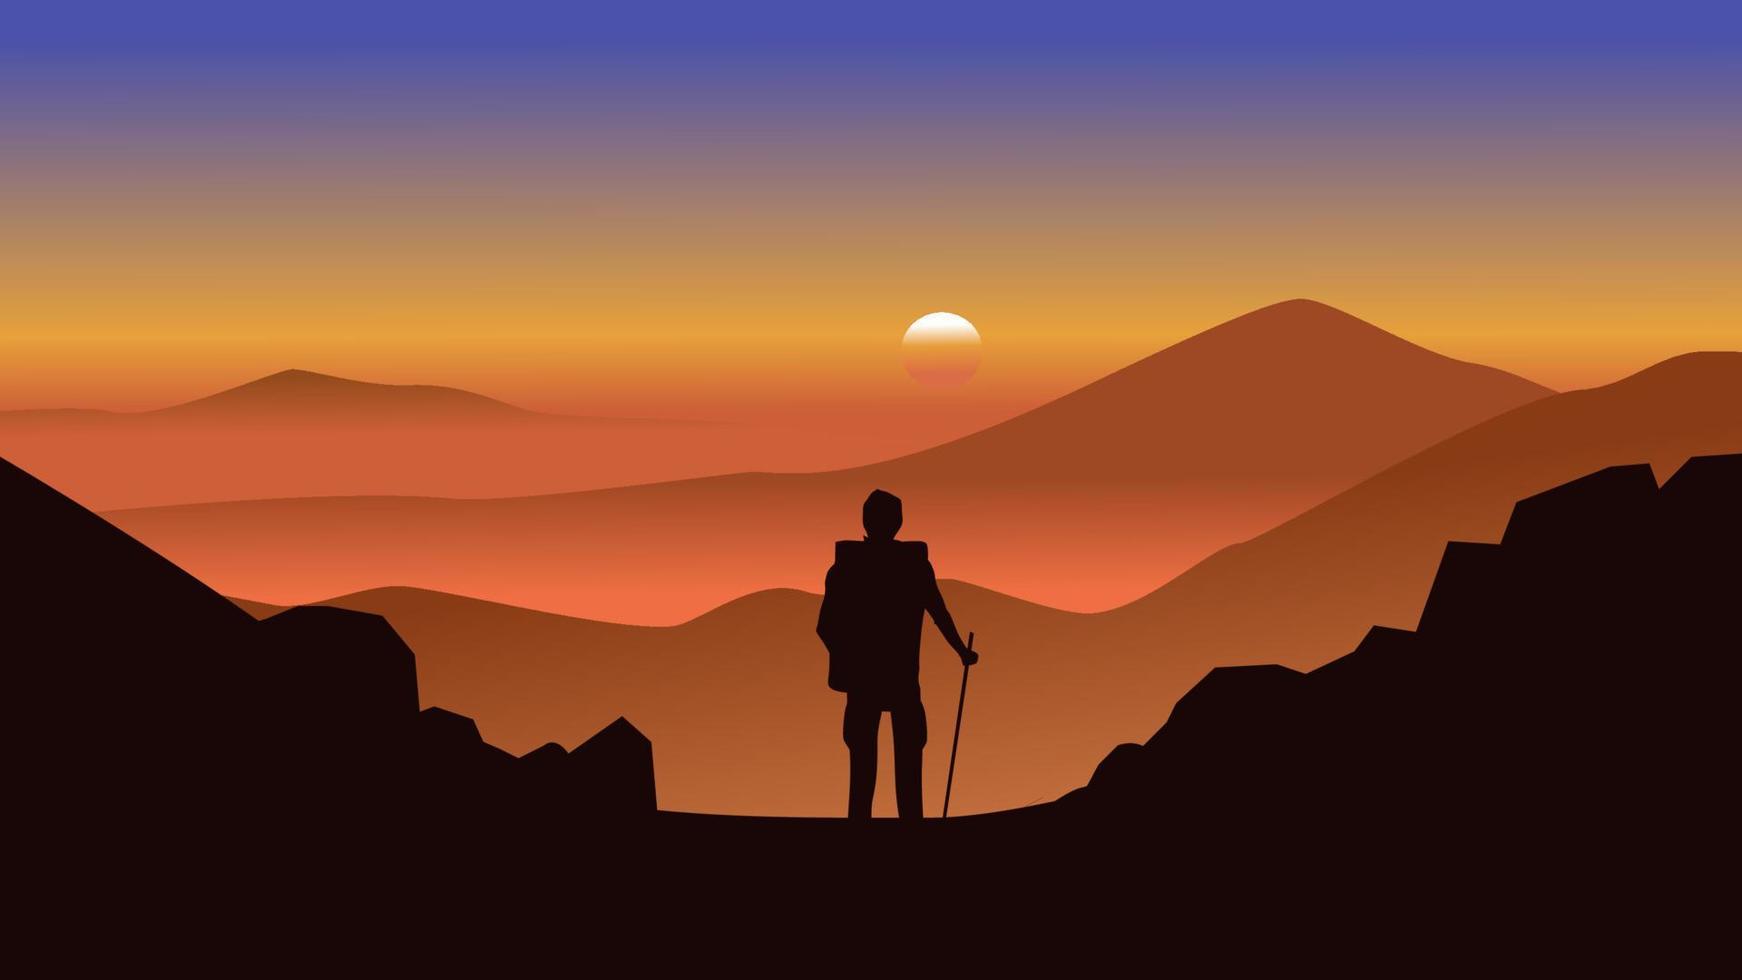 coucher de soleil dans les montagnes brumeuses avec un explorateur debout sur la montagne. paysage de nature de vecteur